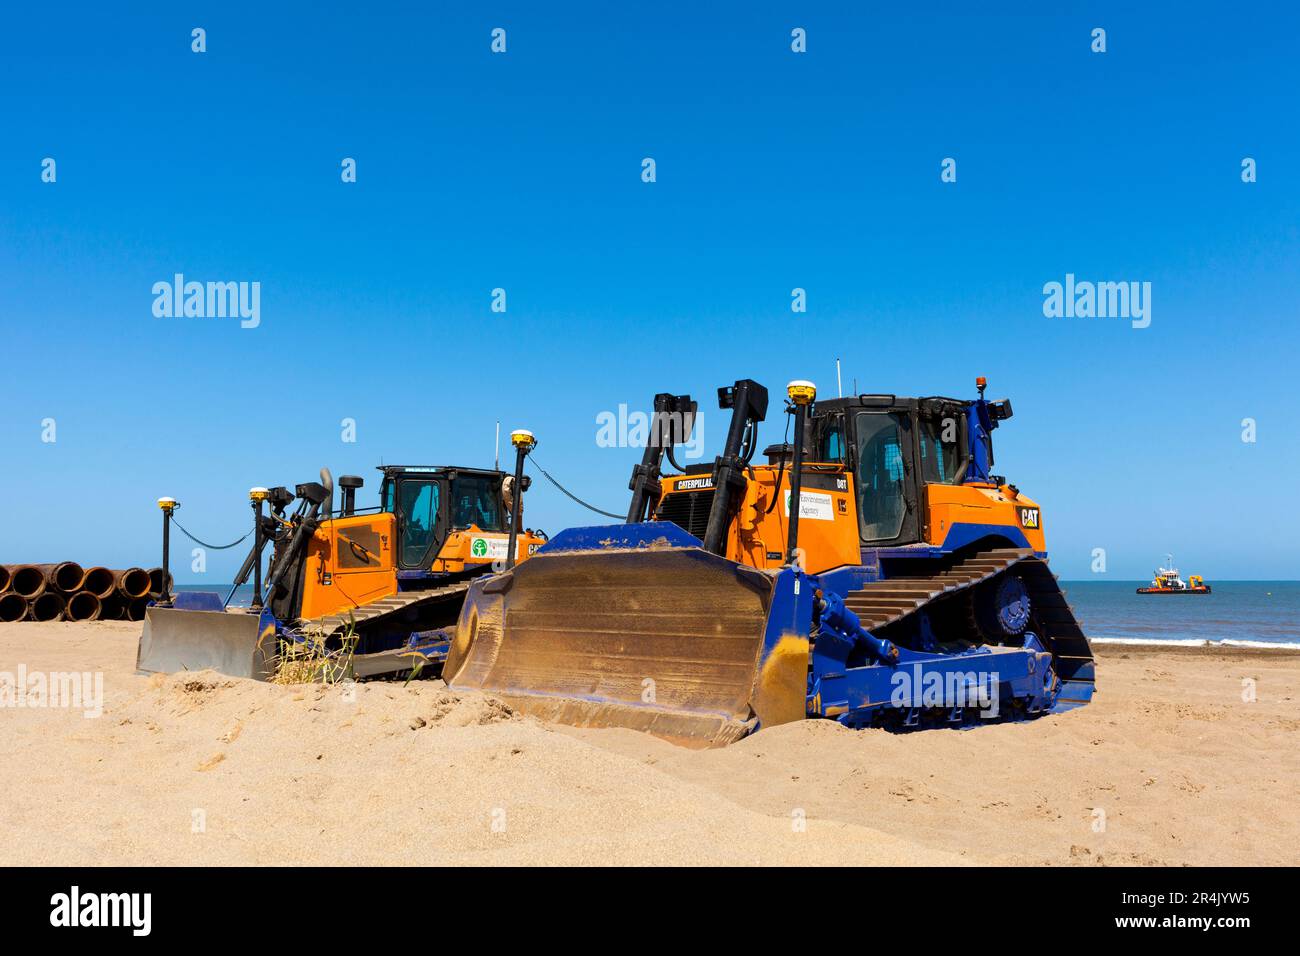 Caterpillar terrassement travaillant sur un projet d'entretien des plages et de défense côtière de l'agence environnementale à Lincolnshire, Angleterre, Royaume-Uni Banque D'Images